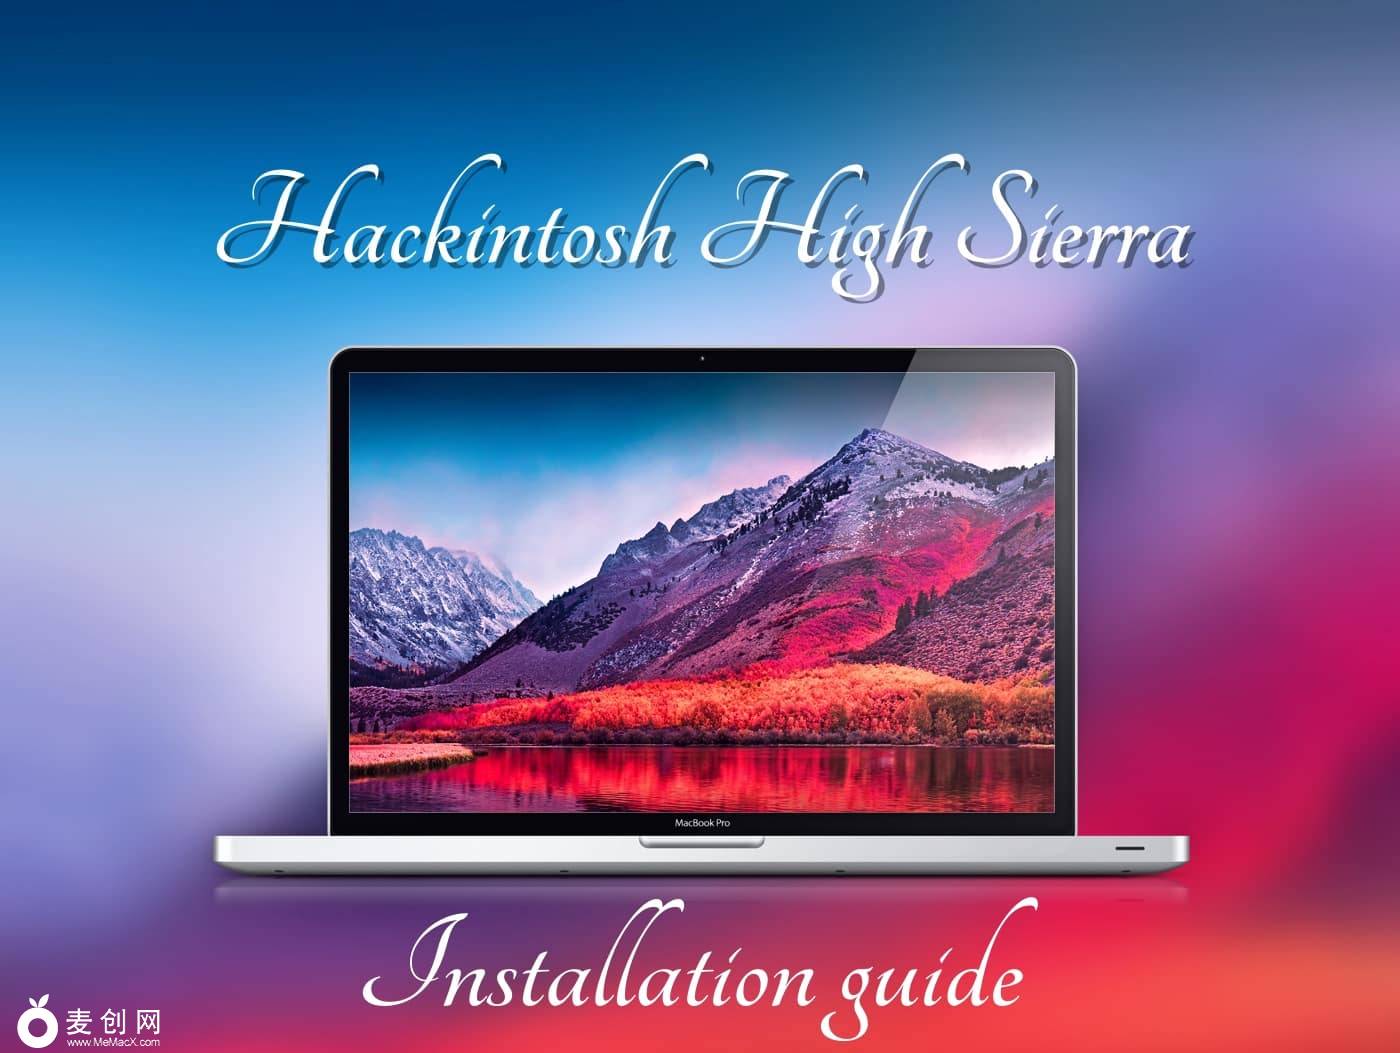 Hackintosh-High-Sierra-Installation-Guide.jpg